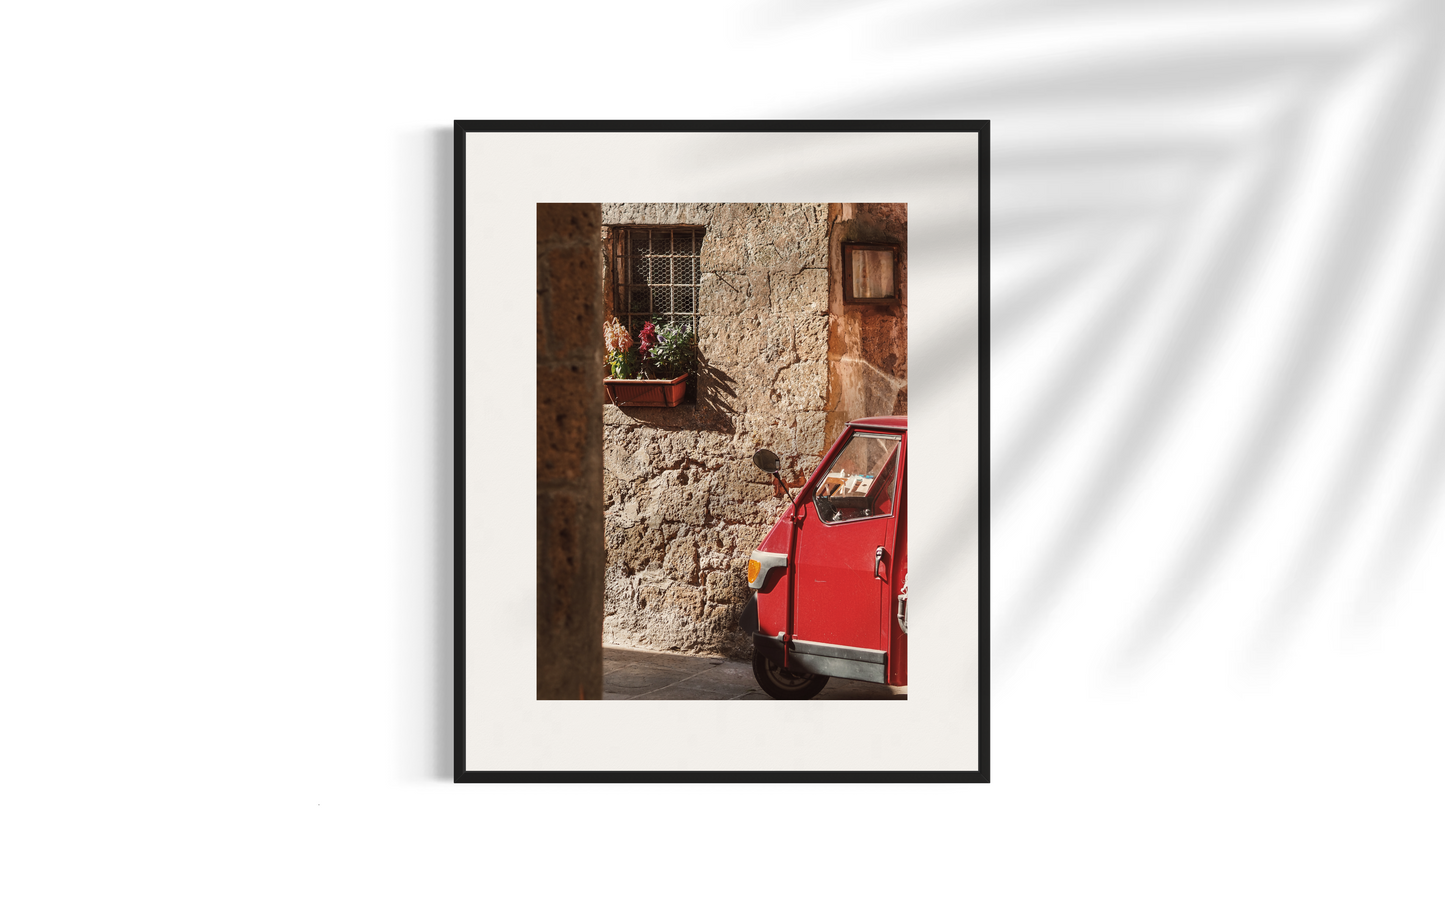 Ape car, Pitigliano, Italy